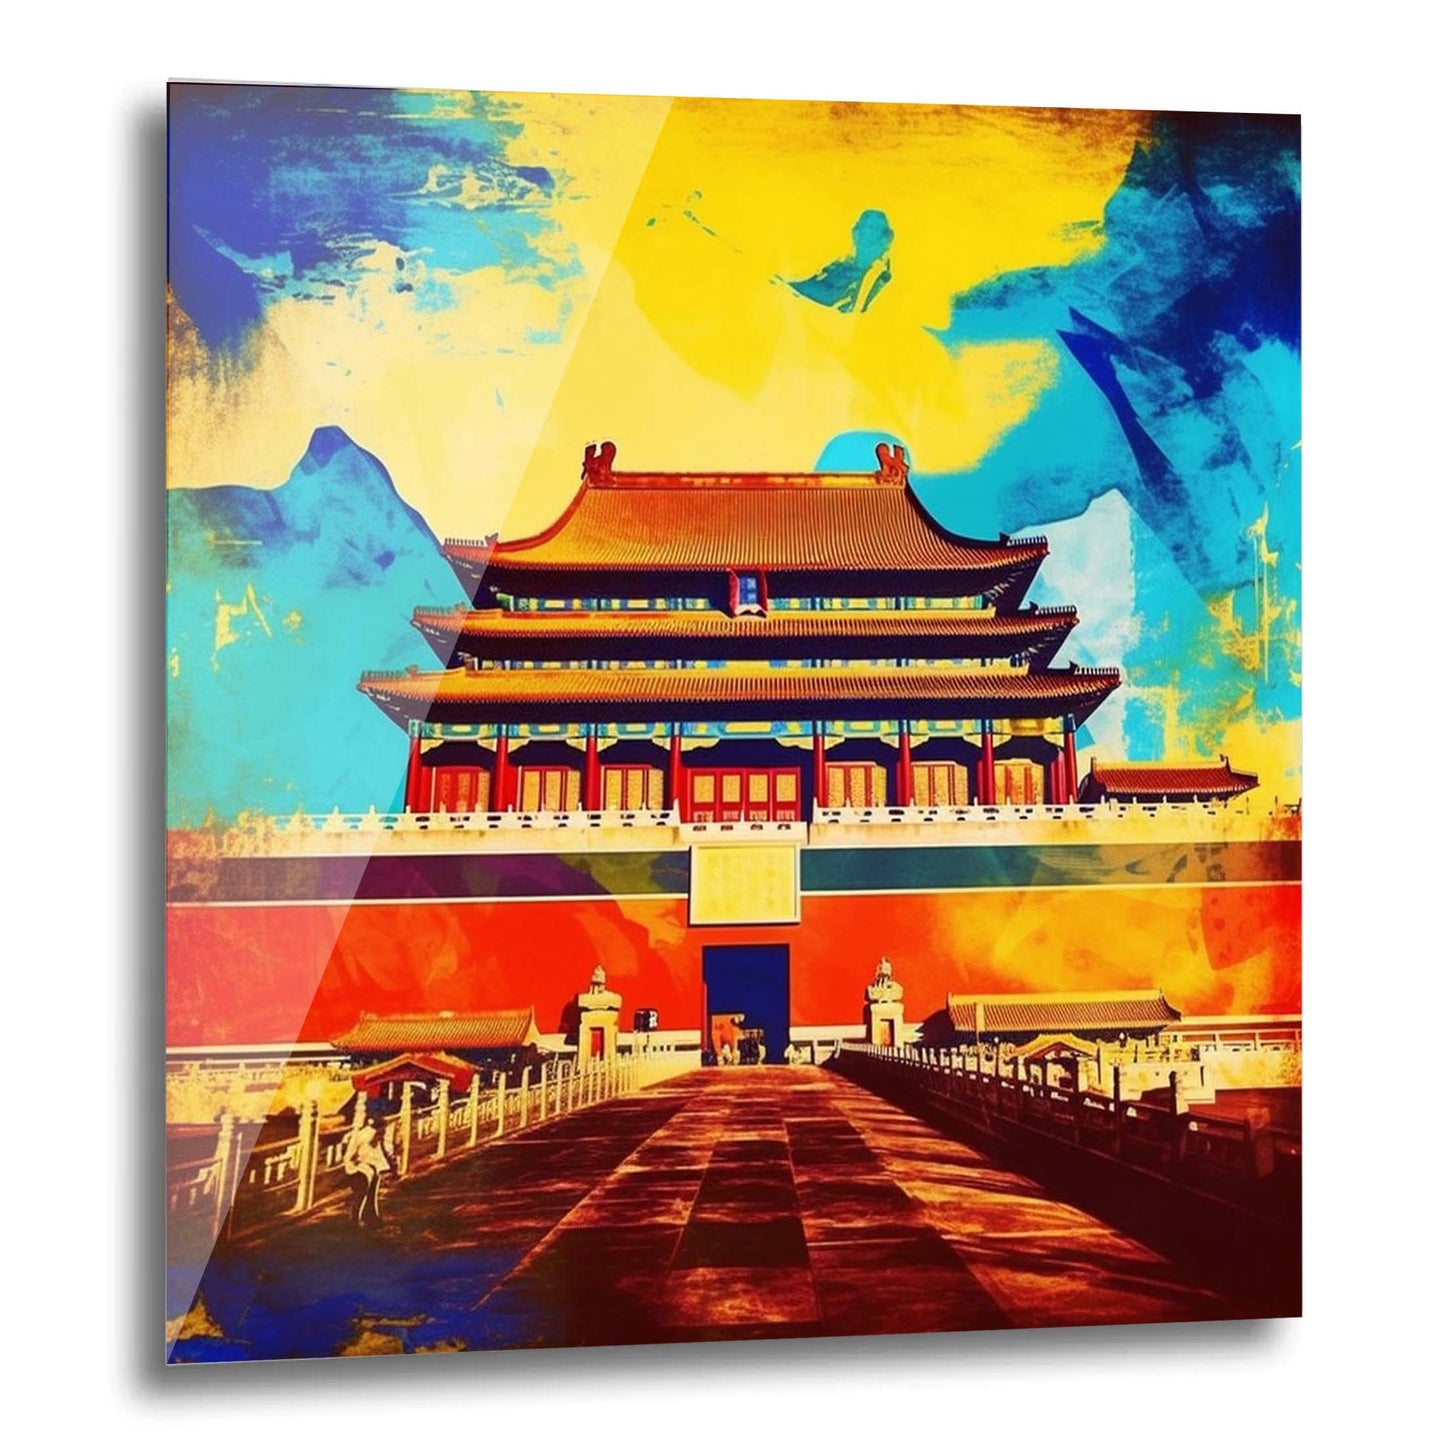 Beijing Forbidden City - mural in pop art style